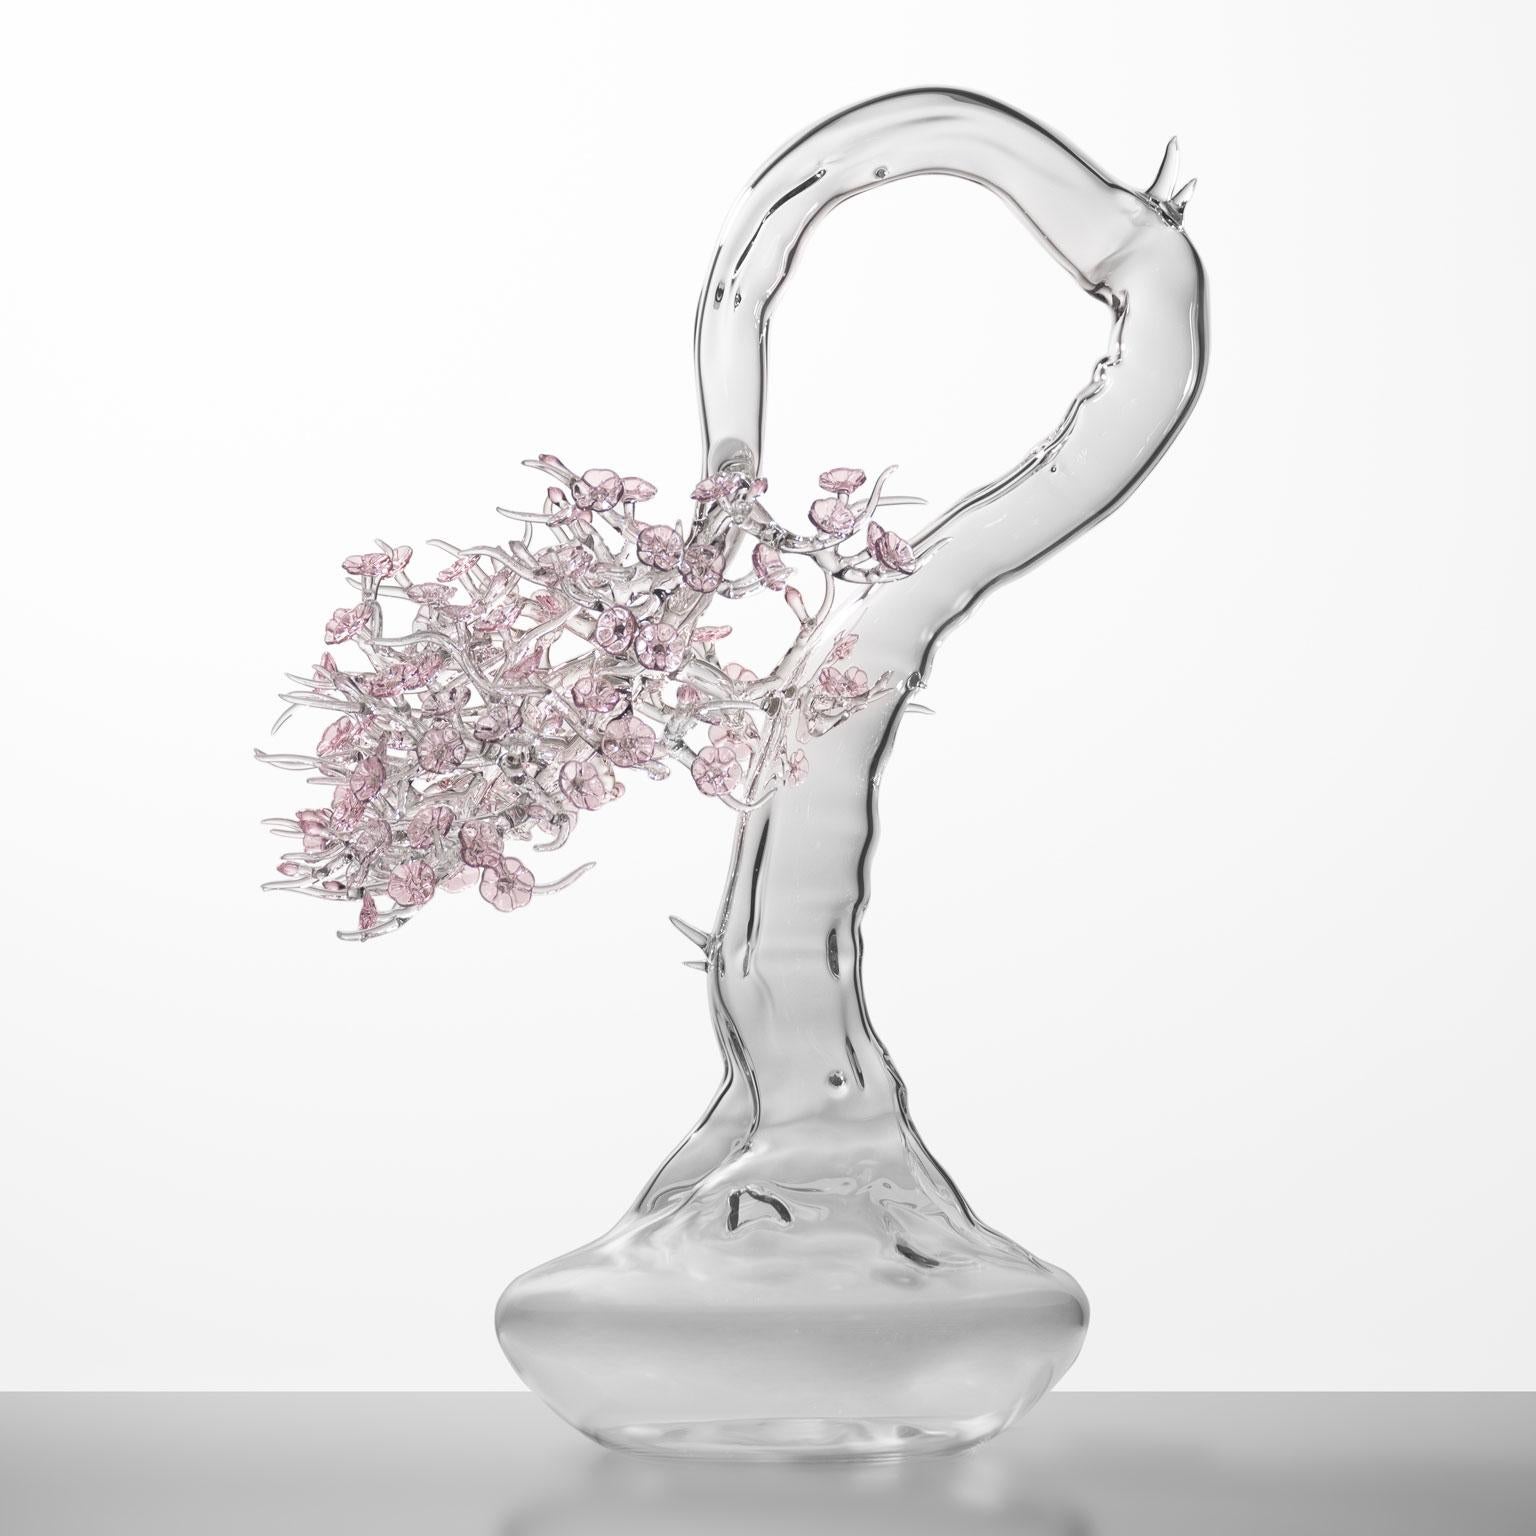 Mundgeblasene Glasskulptur, die einen blühenden Bonsaibaum darstellt.

